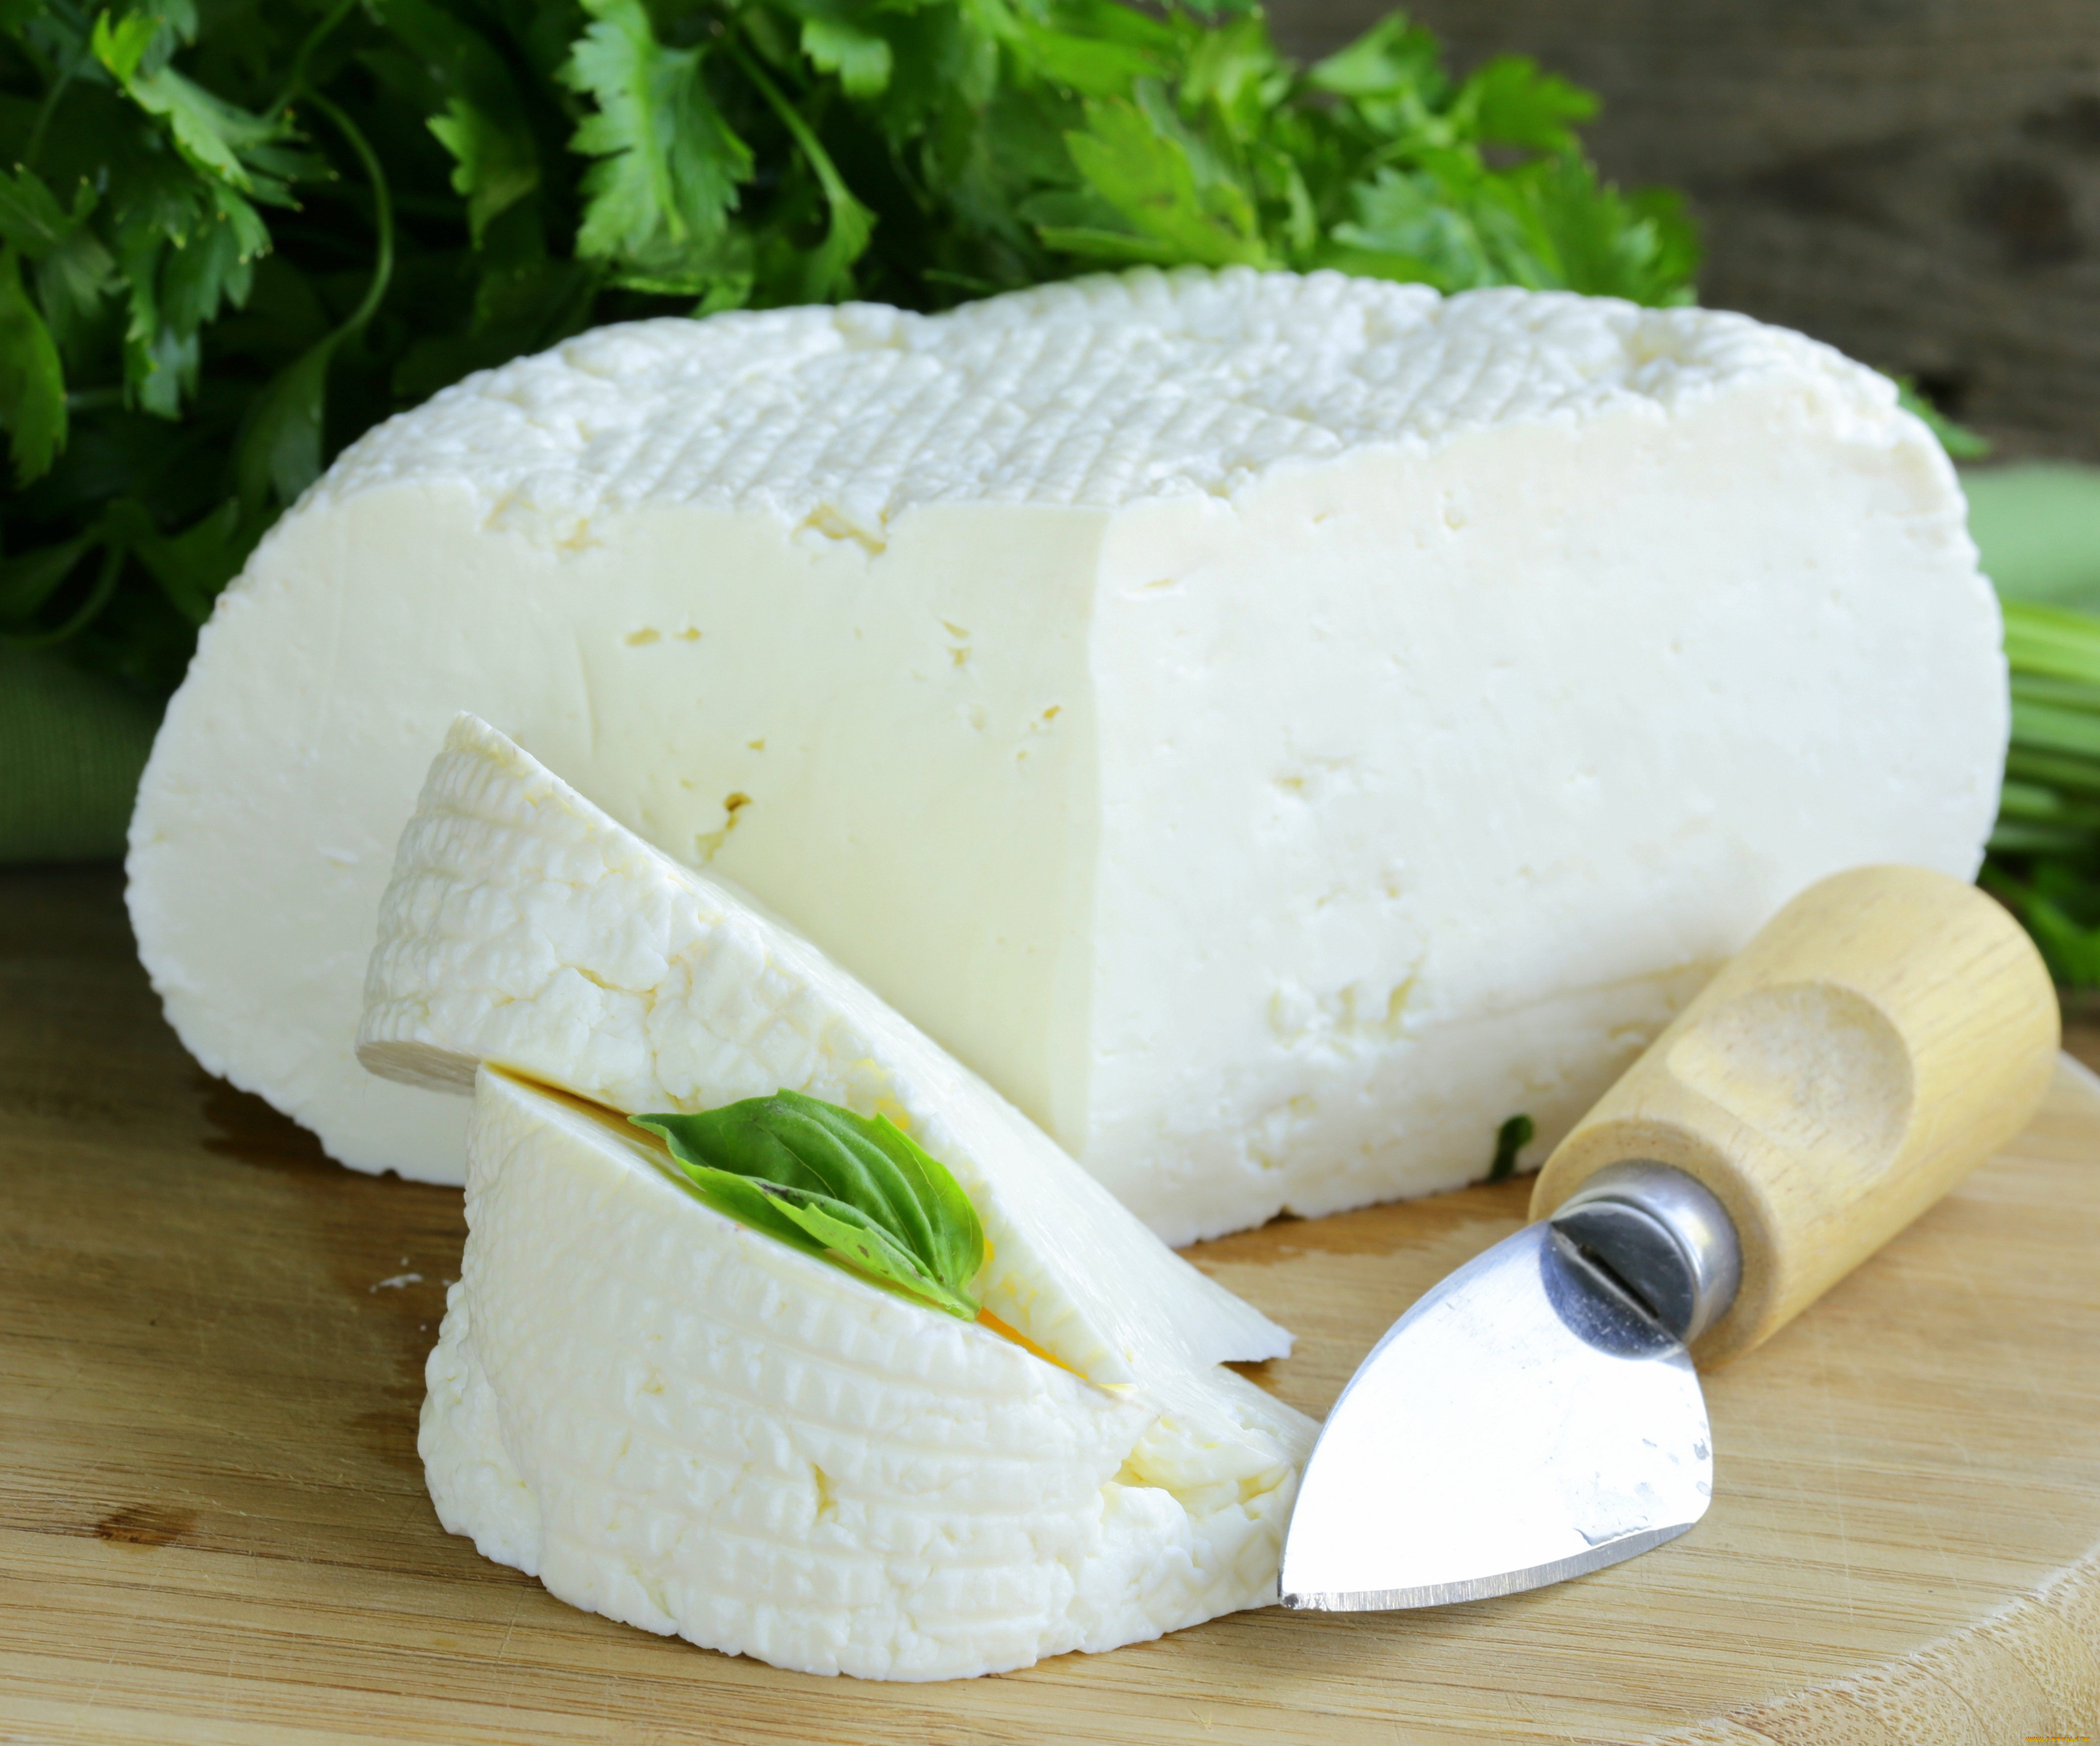 еда, сырные, изделия, knife, нож, зелень, сыр, молочный, продукт, greens, cheese, dairy, products